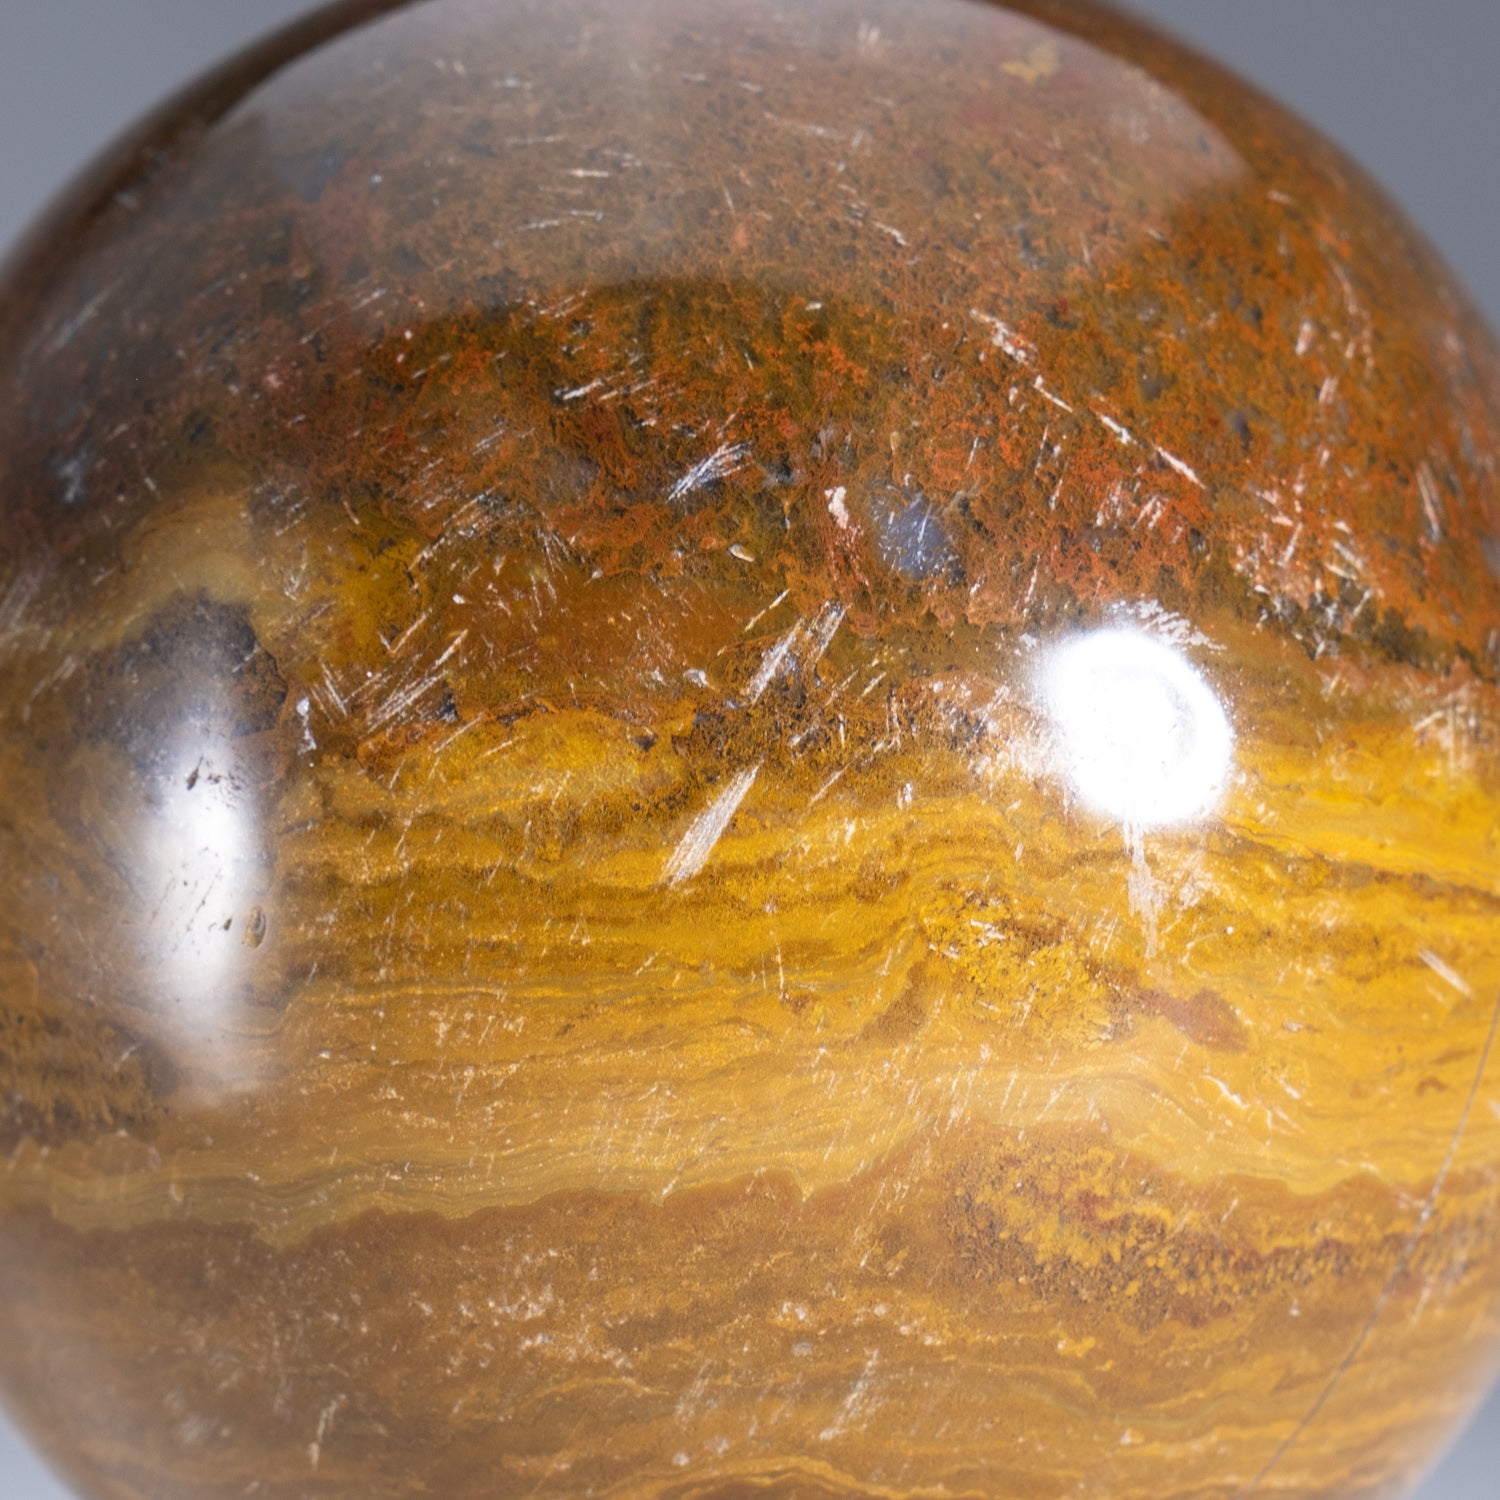 Genuine Polished Ocean Jasper Sphere (2.6 lbs)